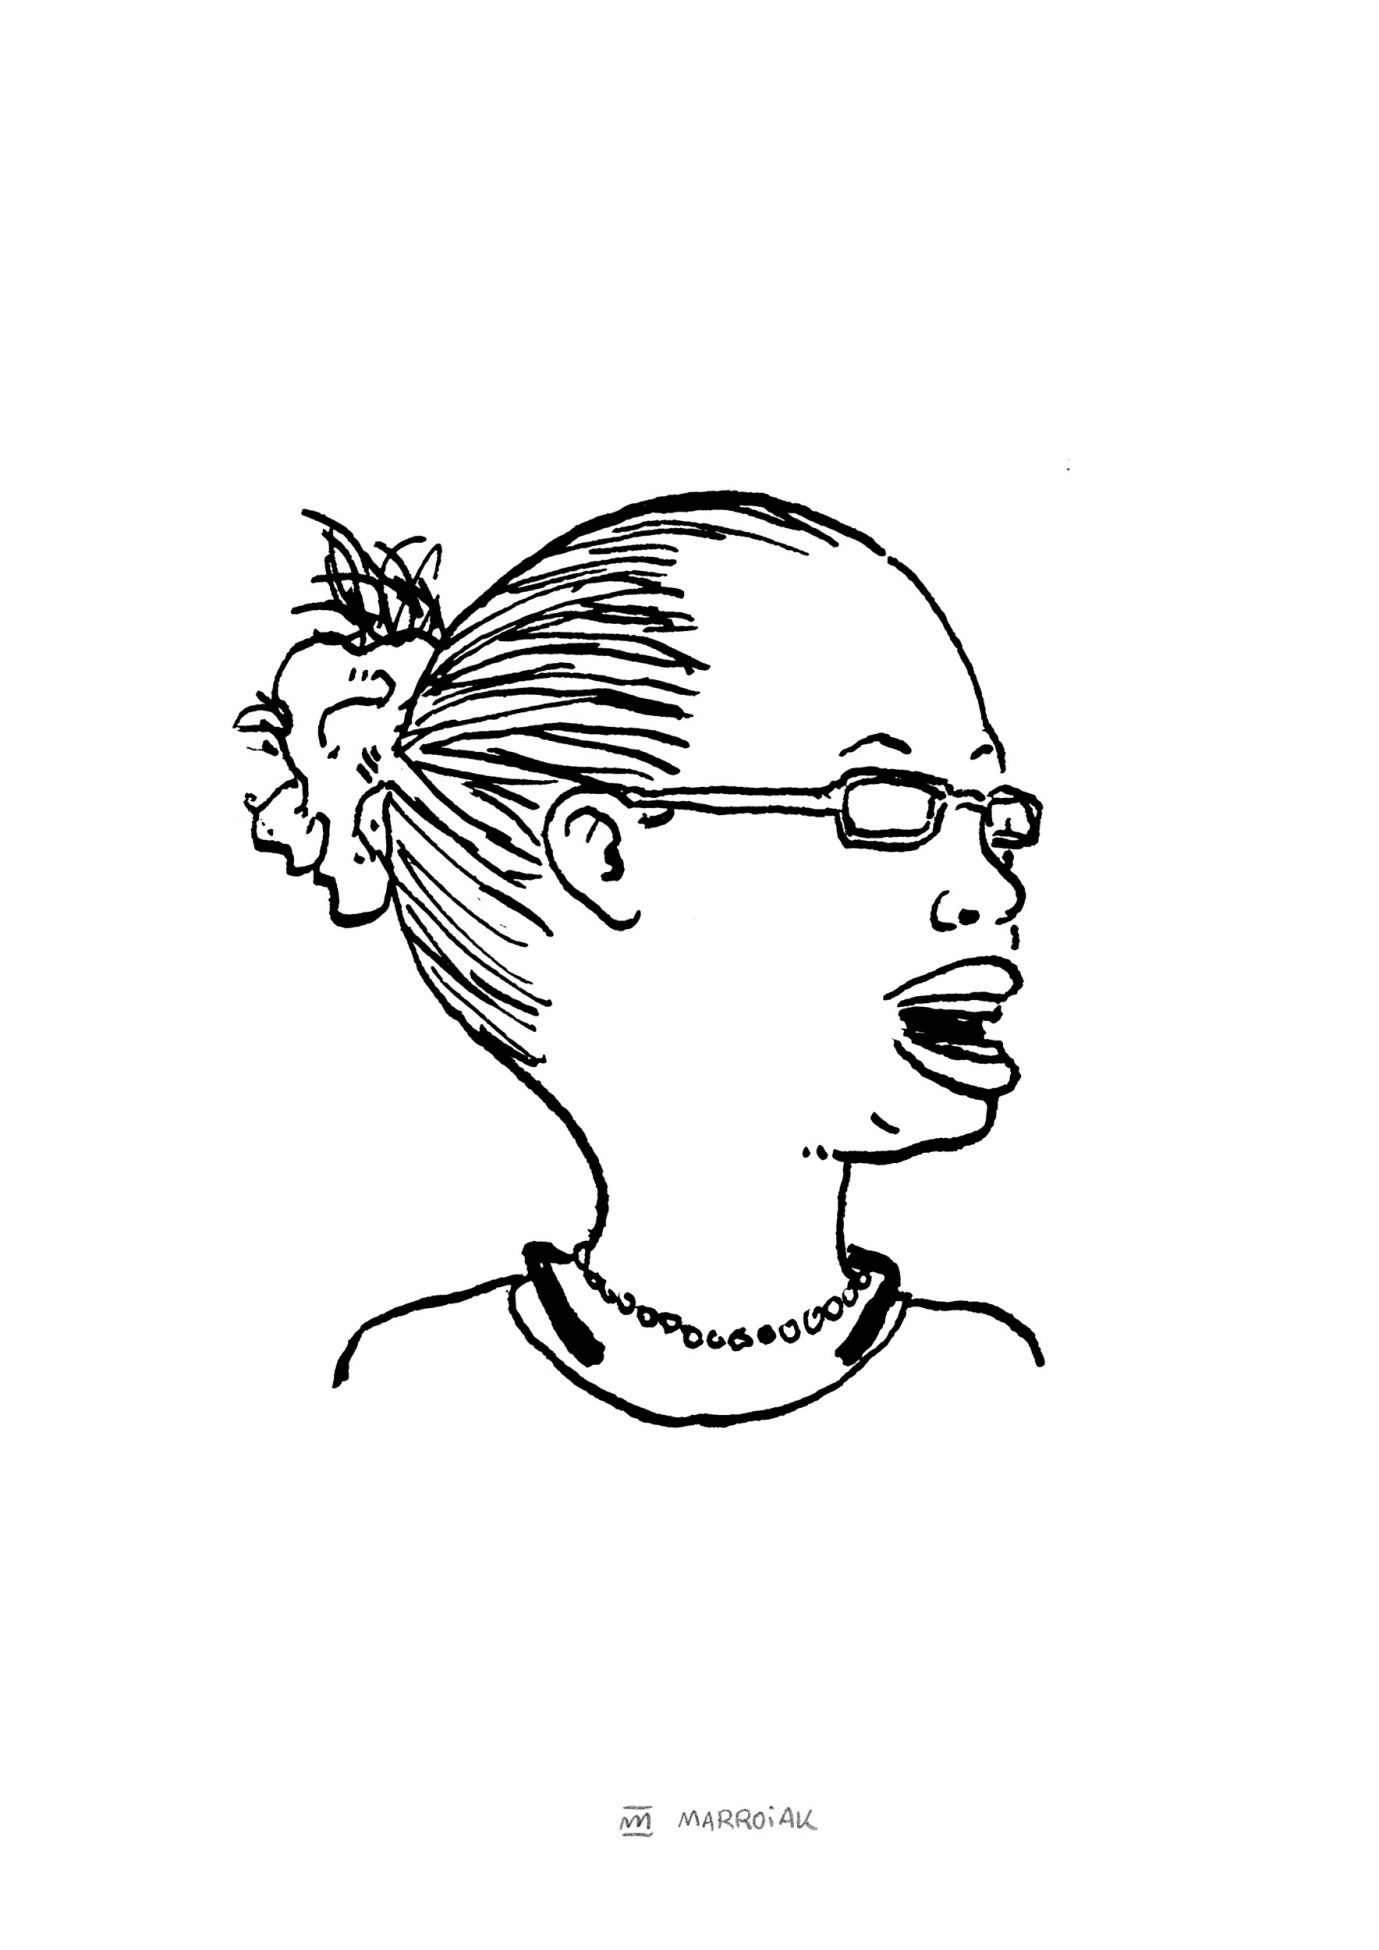 Rretrato en blanco y negro de la doctora y ecologista Elizabeth Pantoren. Ilustración dibujo tinta sobre papel